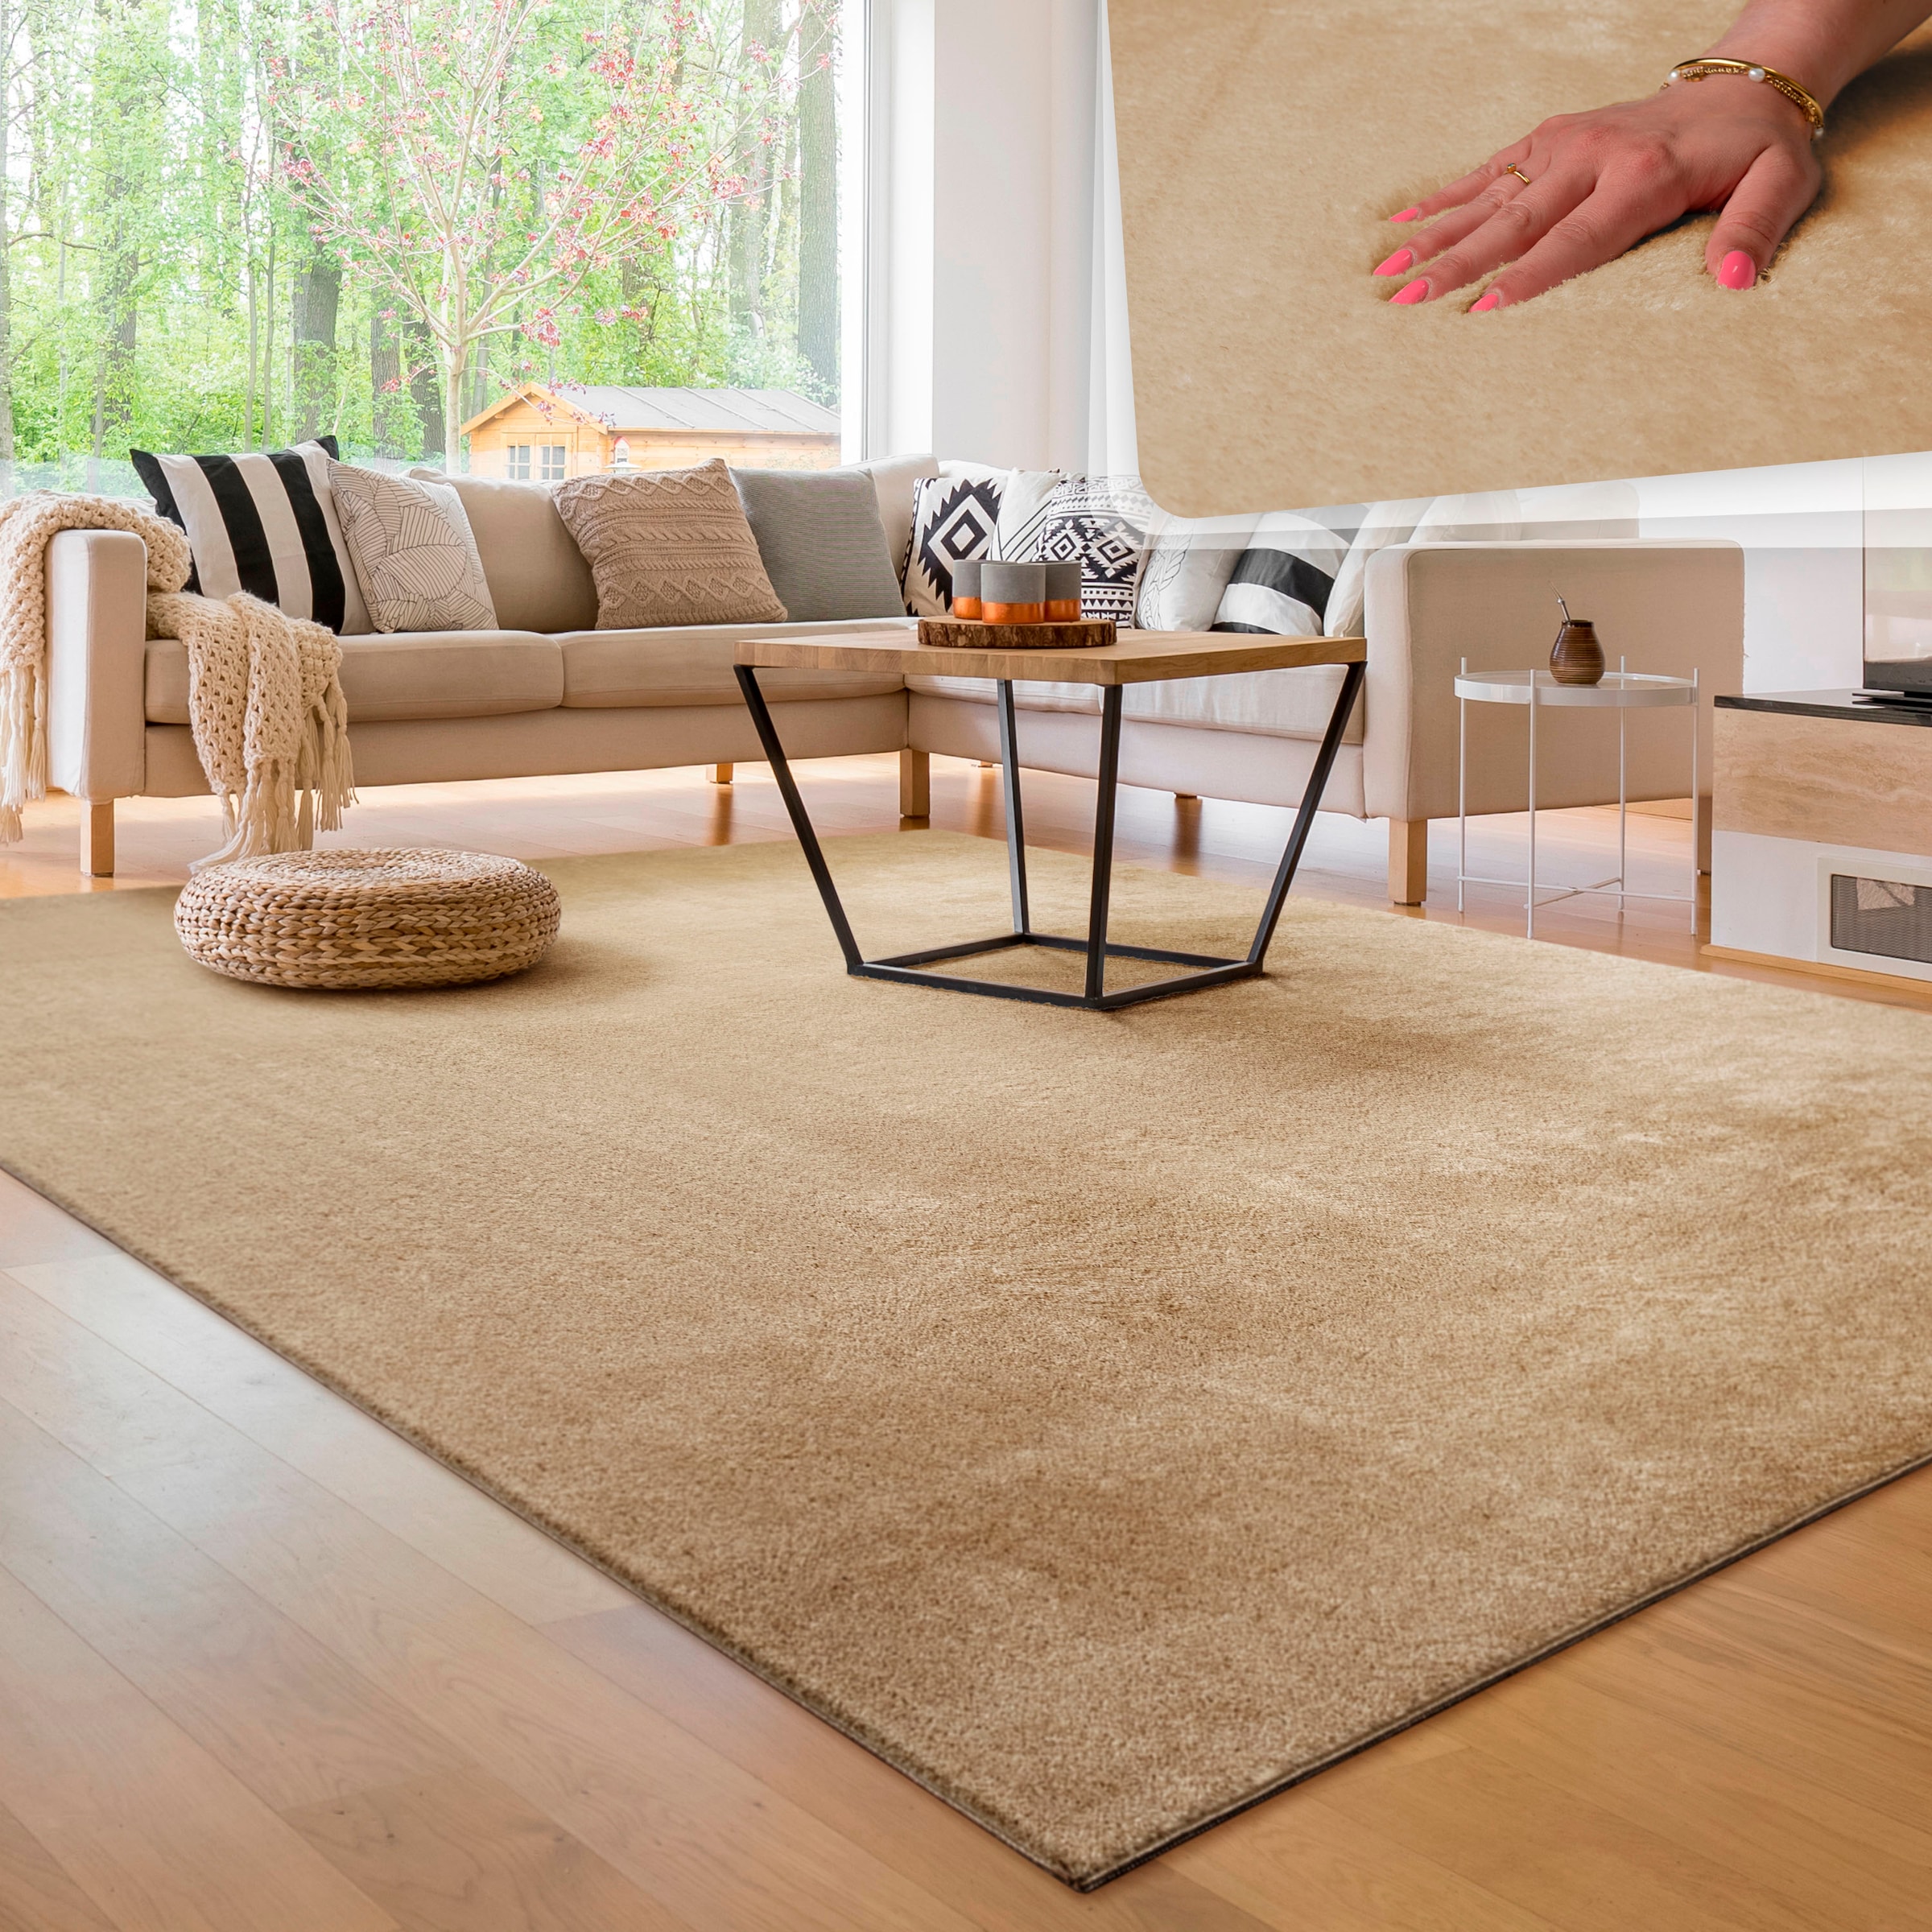 Paco Home Teppich »Cadiz erhältlich besonders rechteckig, als waschbar, Läufer auch Uni-Farben, 630«, weich